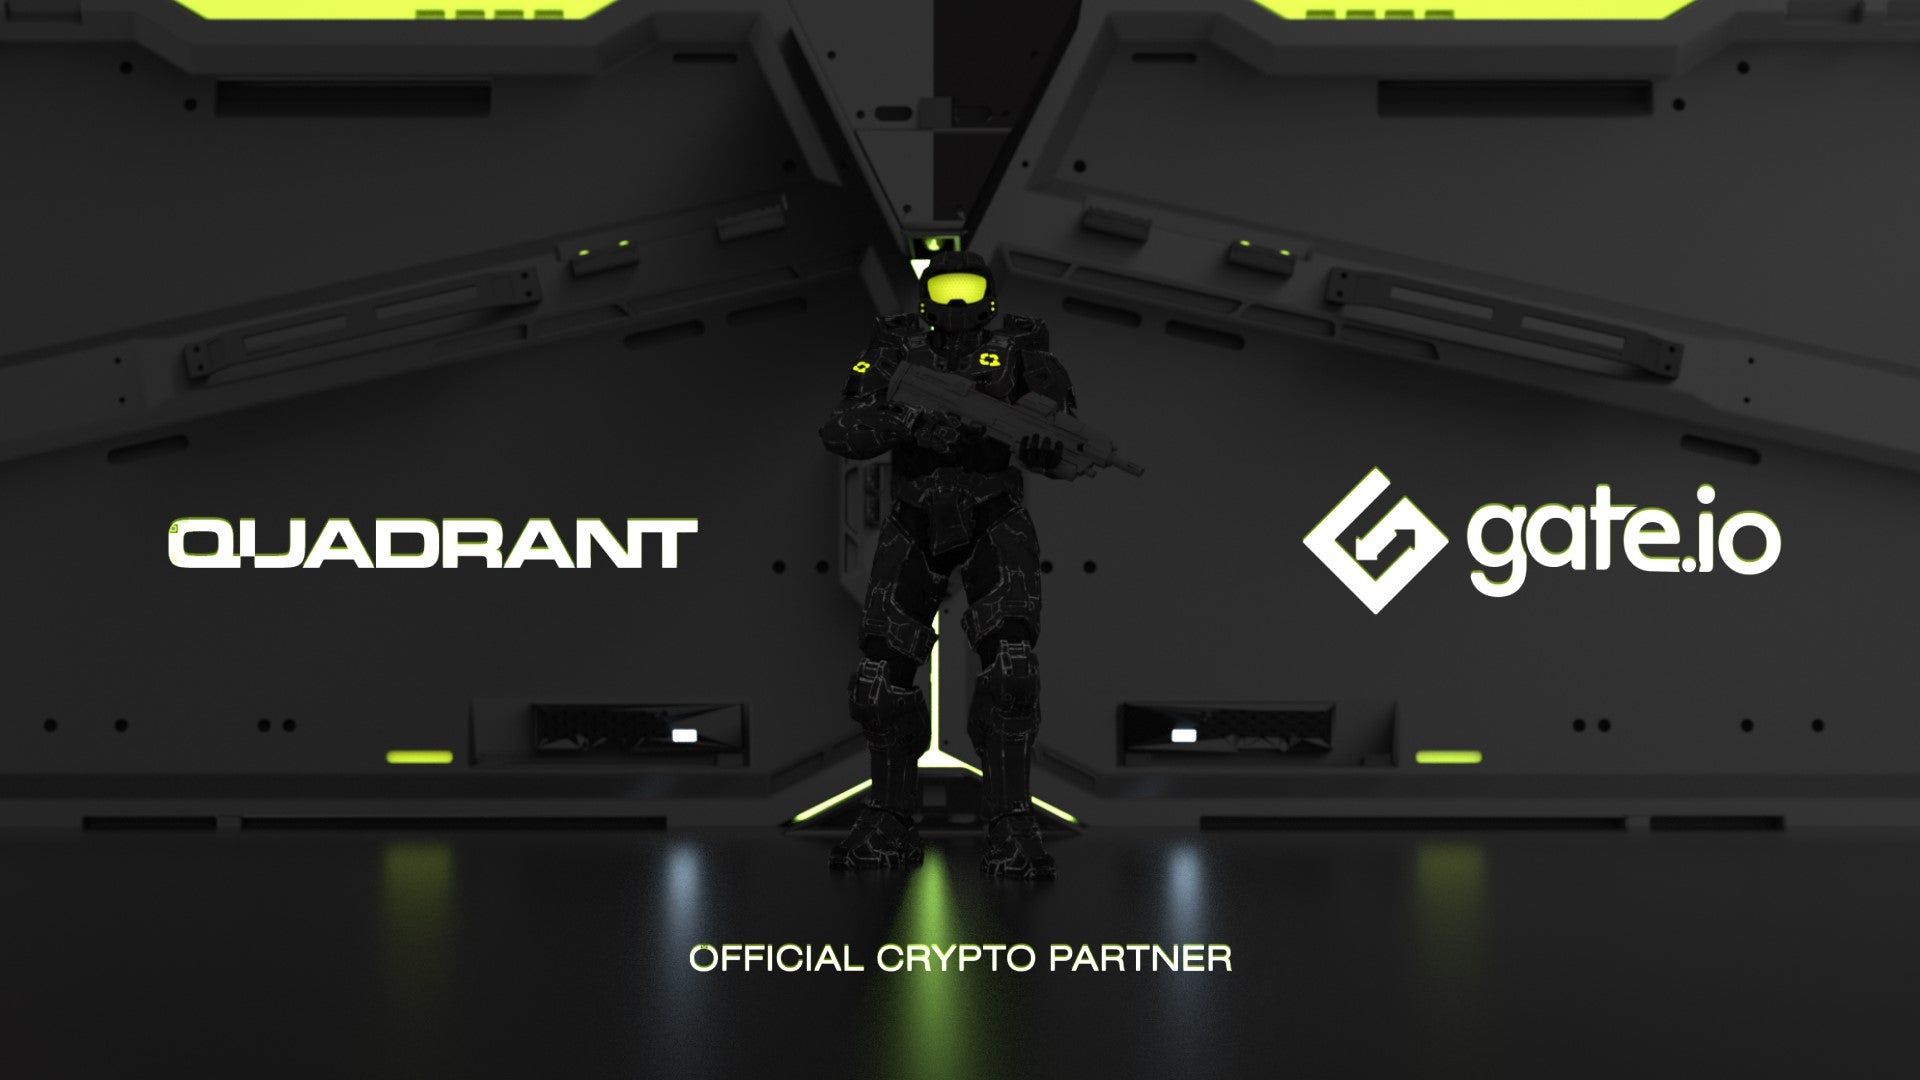 Quadrant Halo tiết lộ Gate.io là đối tác tiền điện tử chính thức